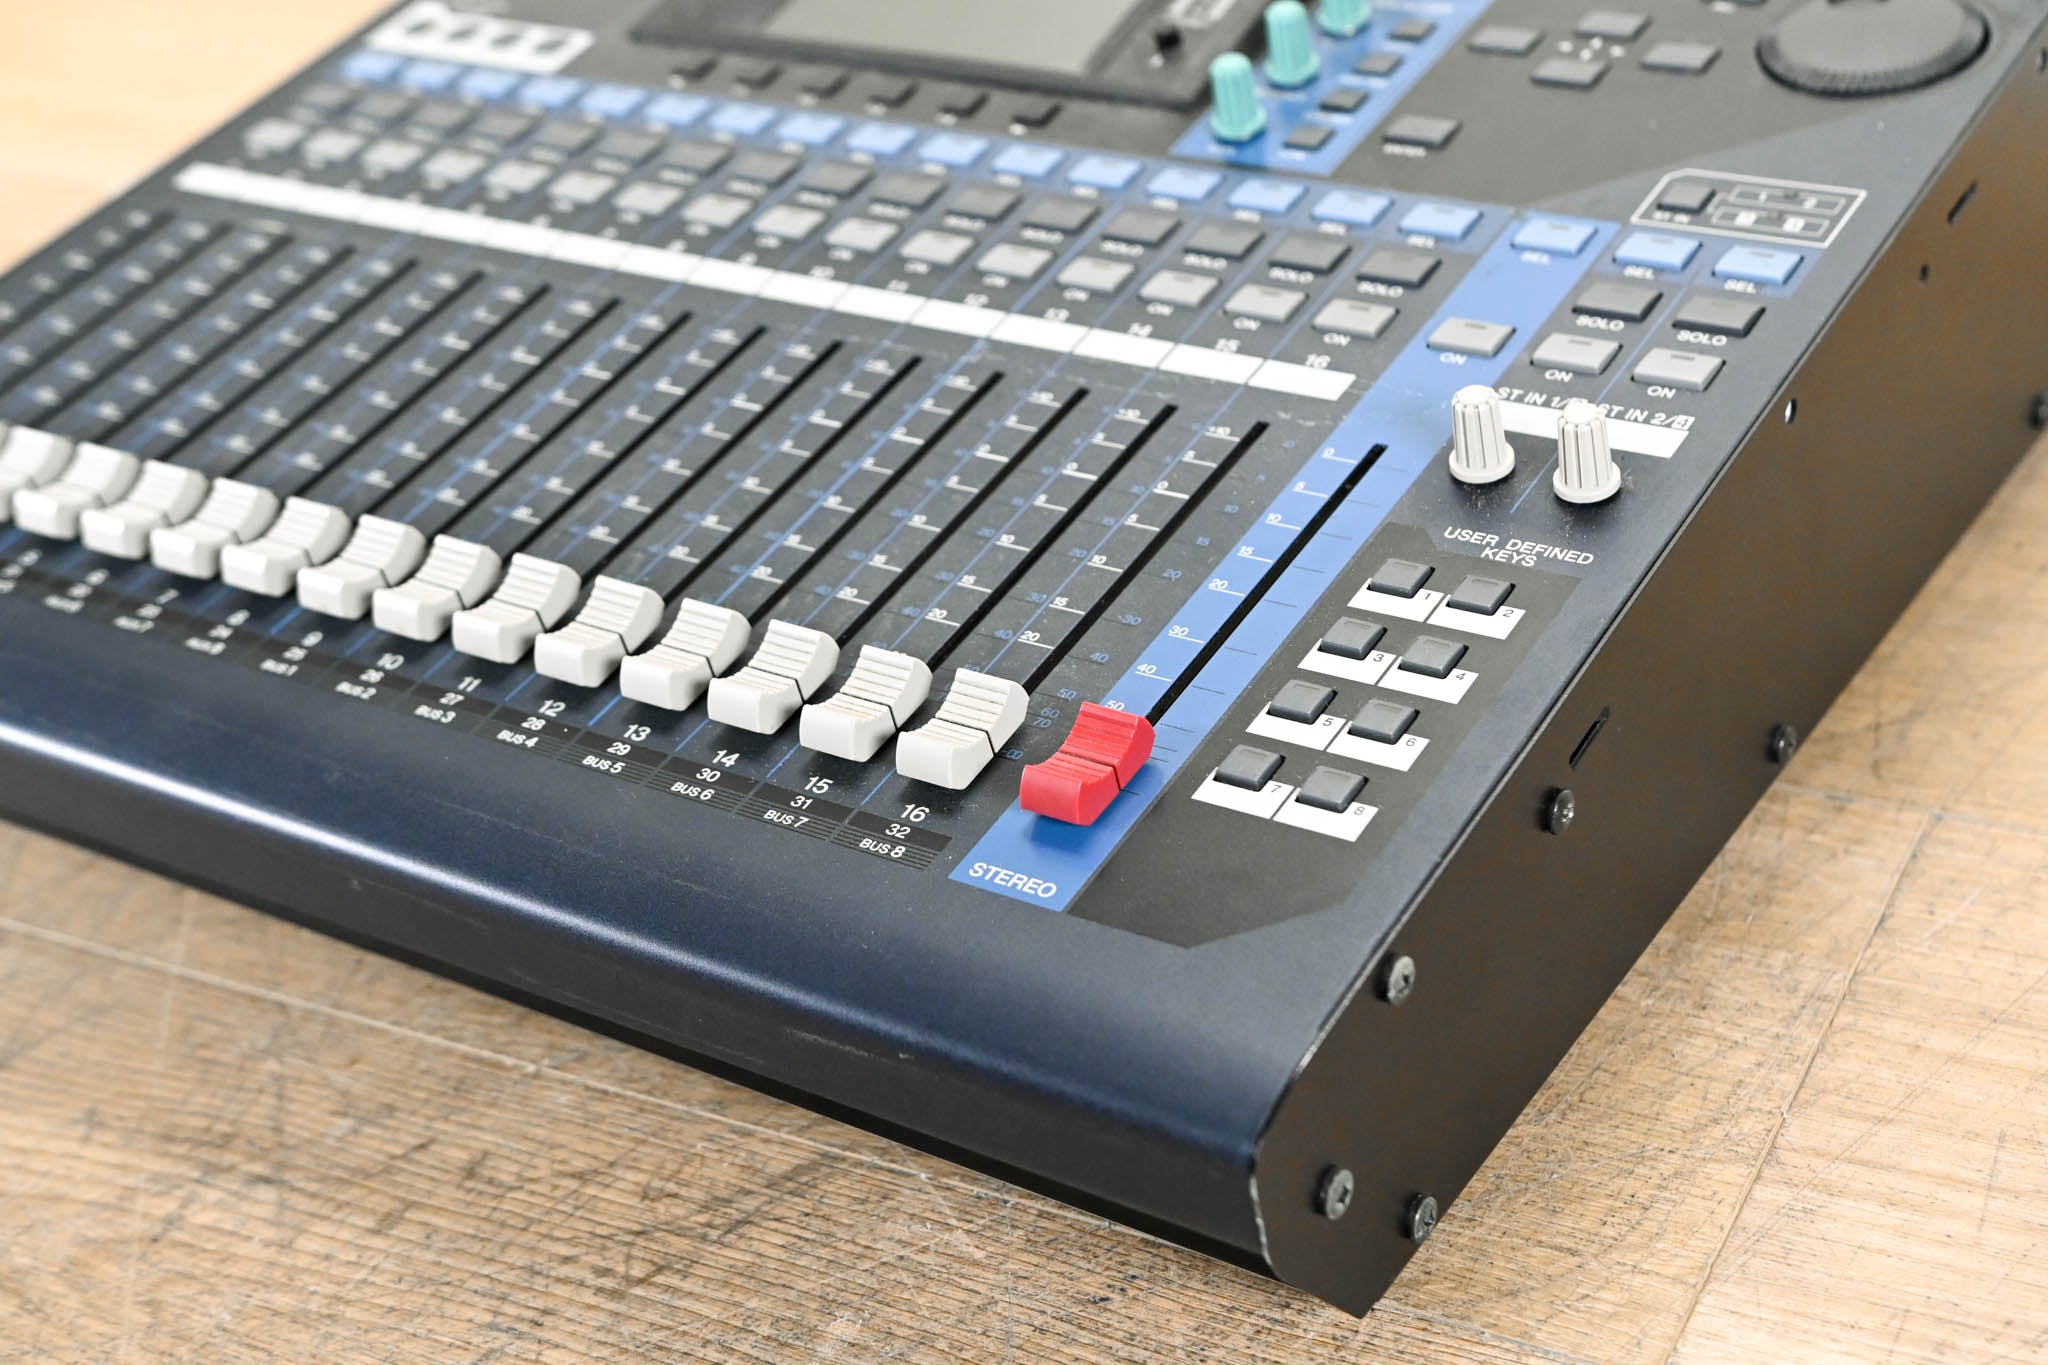 Yamaha 01V96 24-Bit/96k Digital Recording Mixer